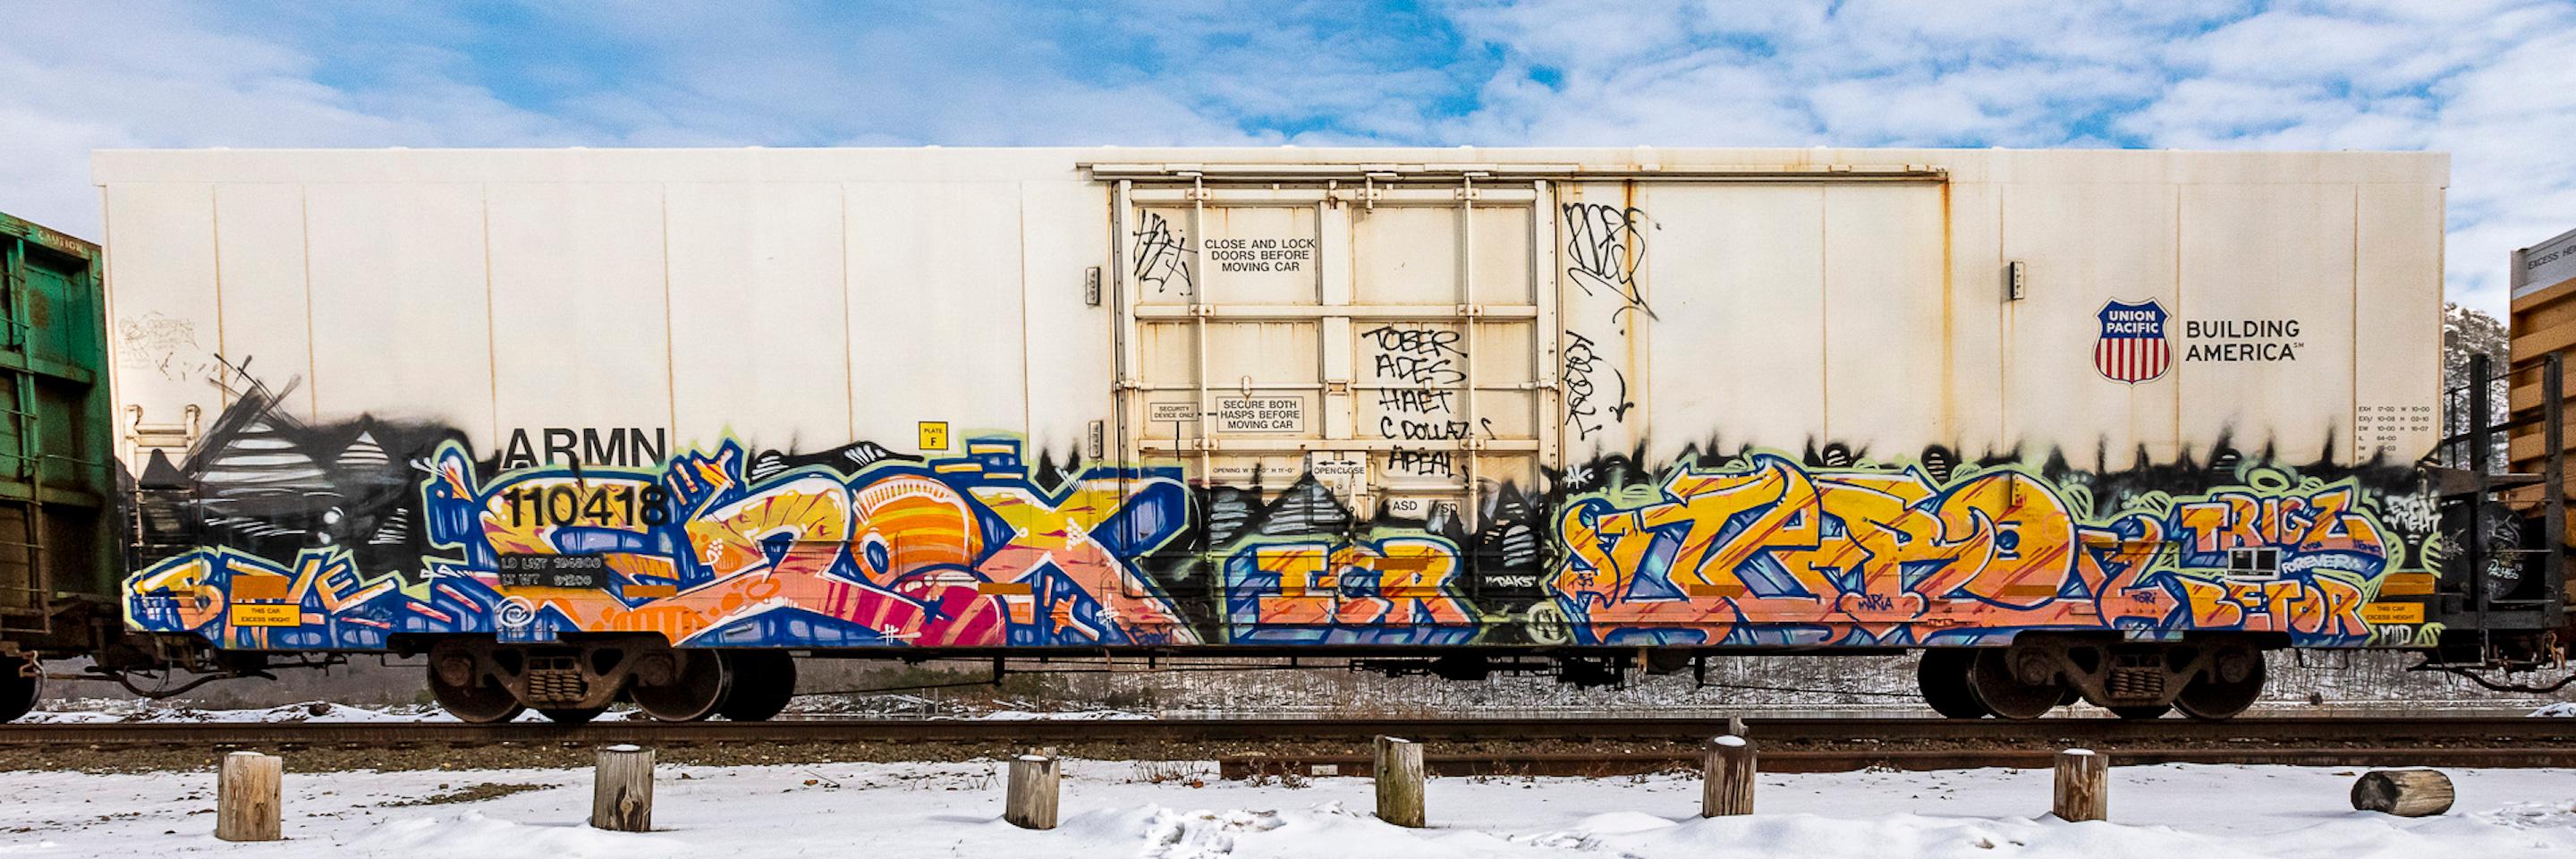 Figurative Photograph Stephen Mallon - "Armn 110418" Graffiti peint voiture de train de chemin de fer, photo en édition limitée 15"x45"